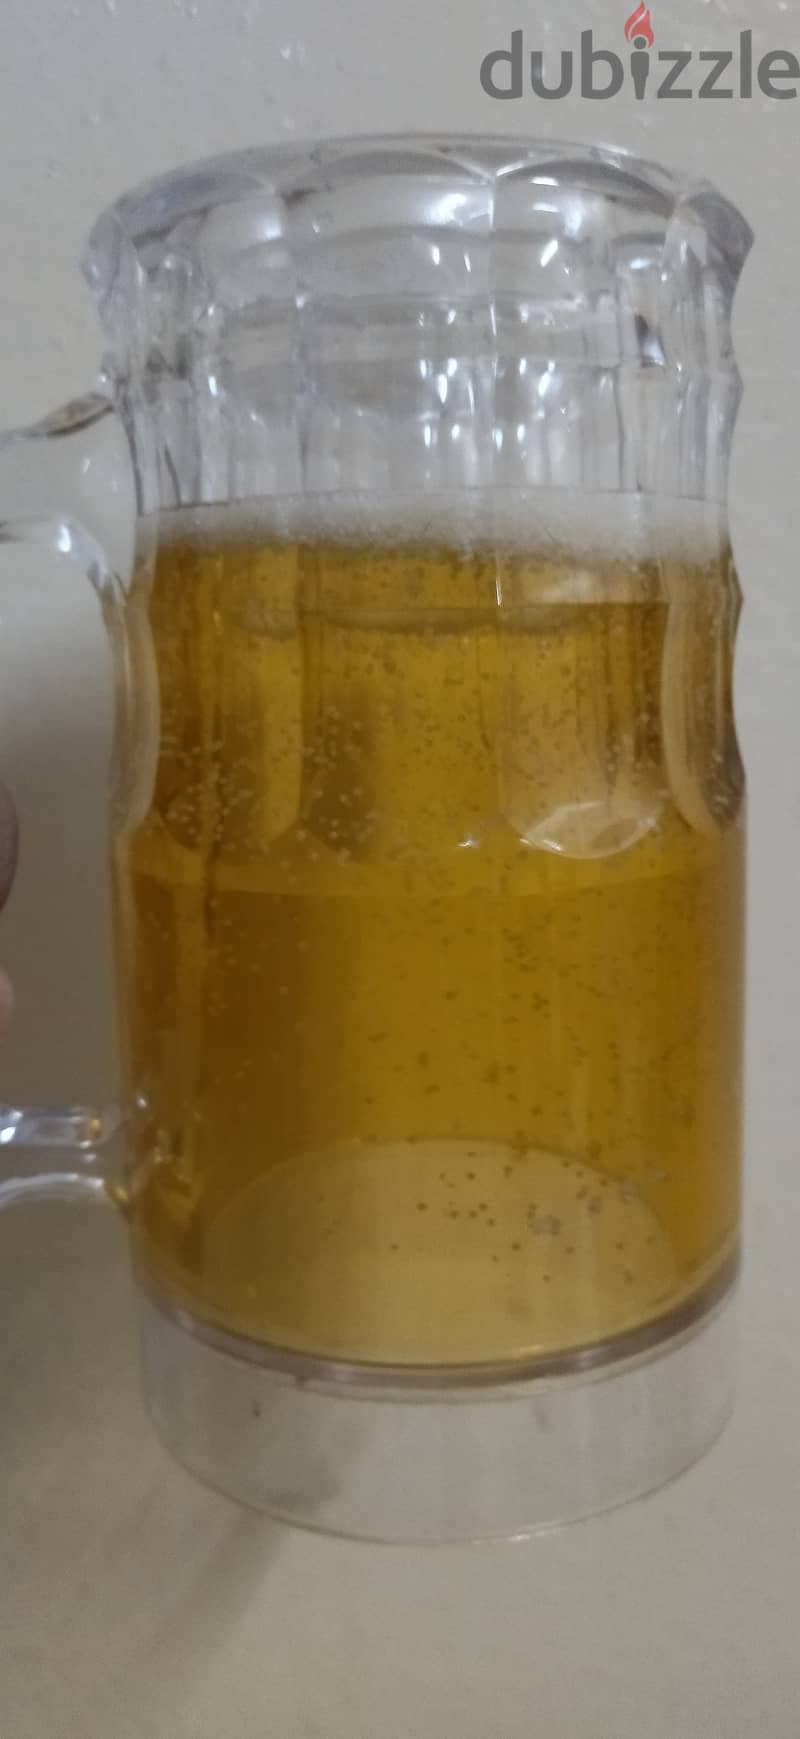 Fake beer cup 12